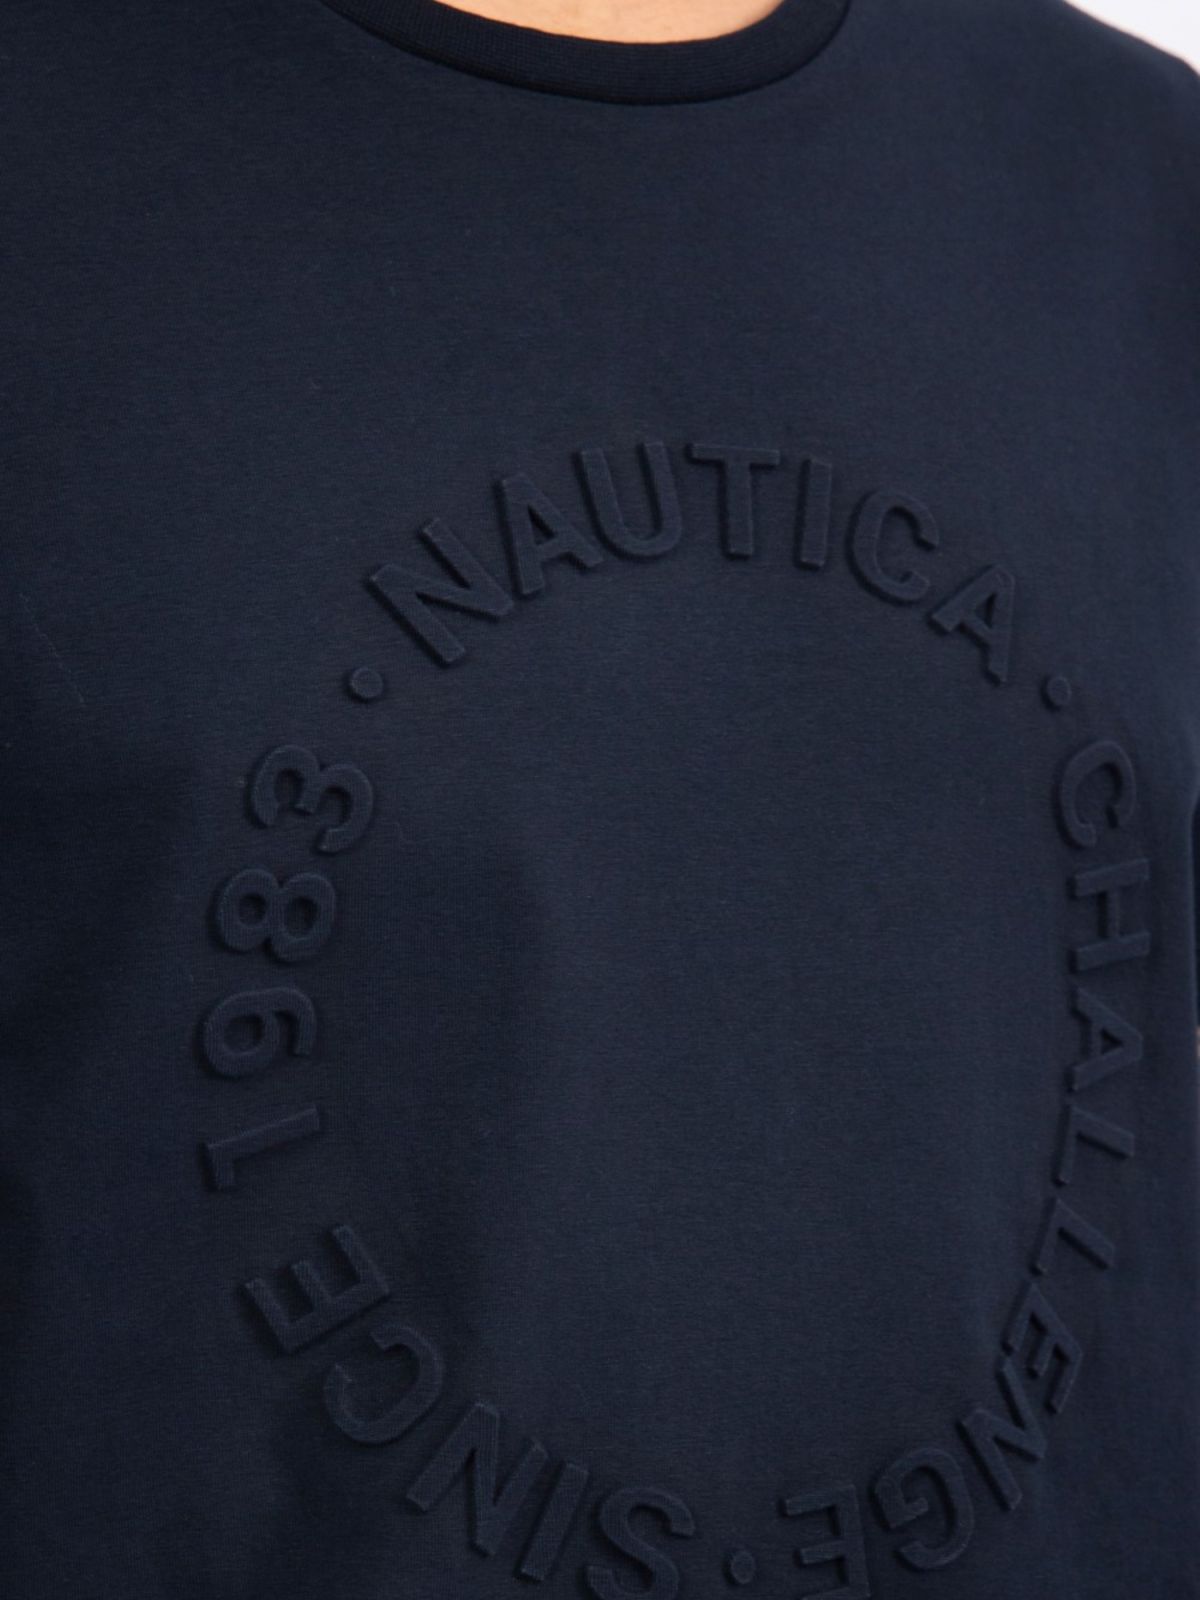  טי שירט עם תבליט לוגו של NAUTICA